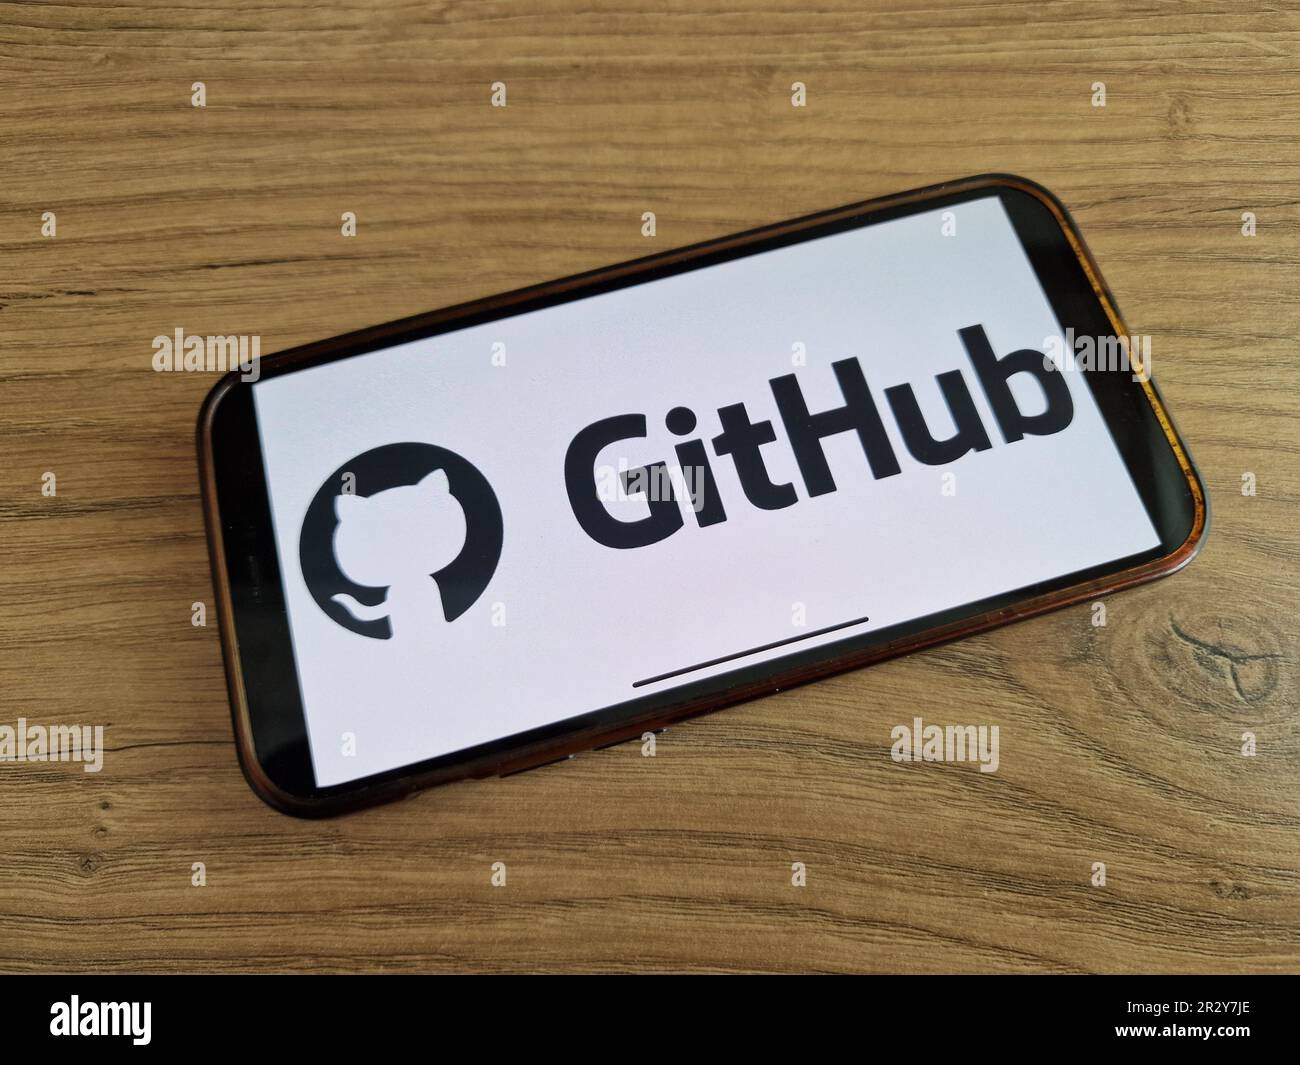 Konskie, Polen - 20. Mai 2023: GitHub Internet-Hosting-Service-Logo wird auf dem Bildschirm des Mobiltelefons angezeigt Stockfoto